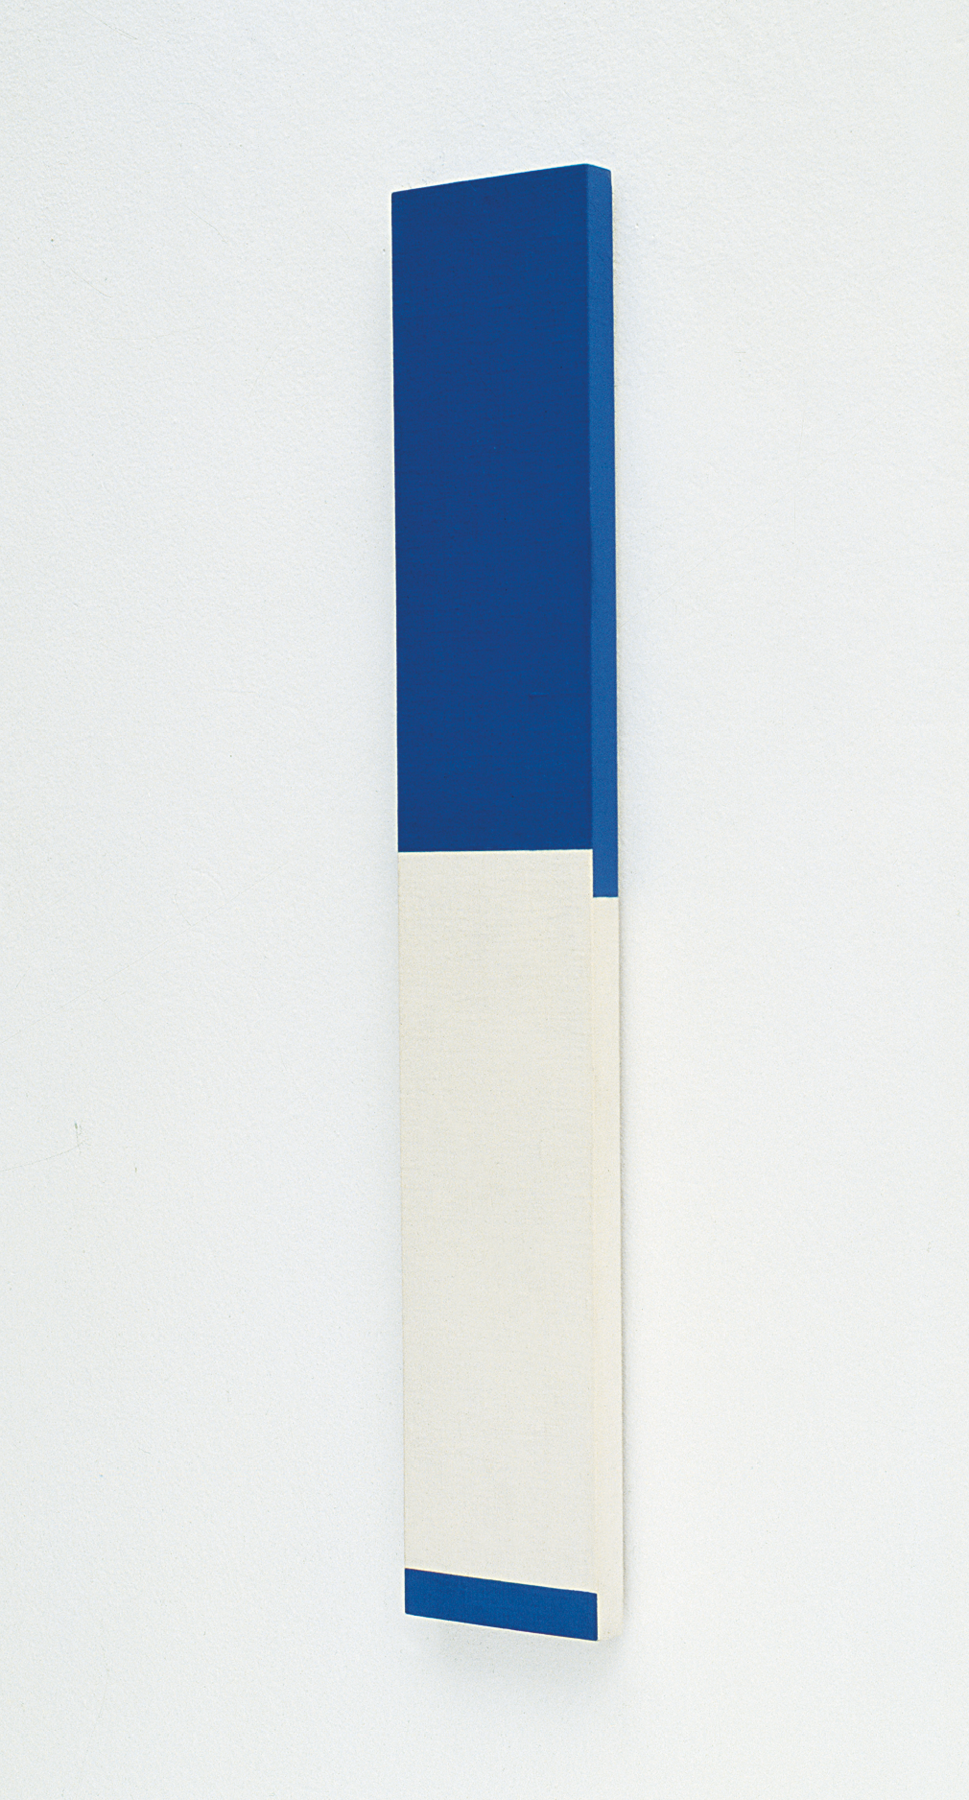 Pintura. Uma barra retangular verticalizada com a parte superior pintada de azul e a parte inferior pintada de branco com uma pequena barra horizontal em cor azul na extremidade inferior.